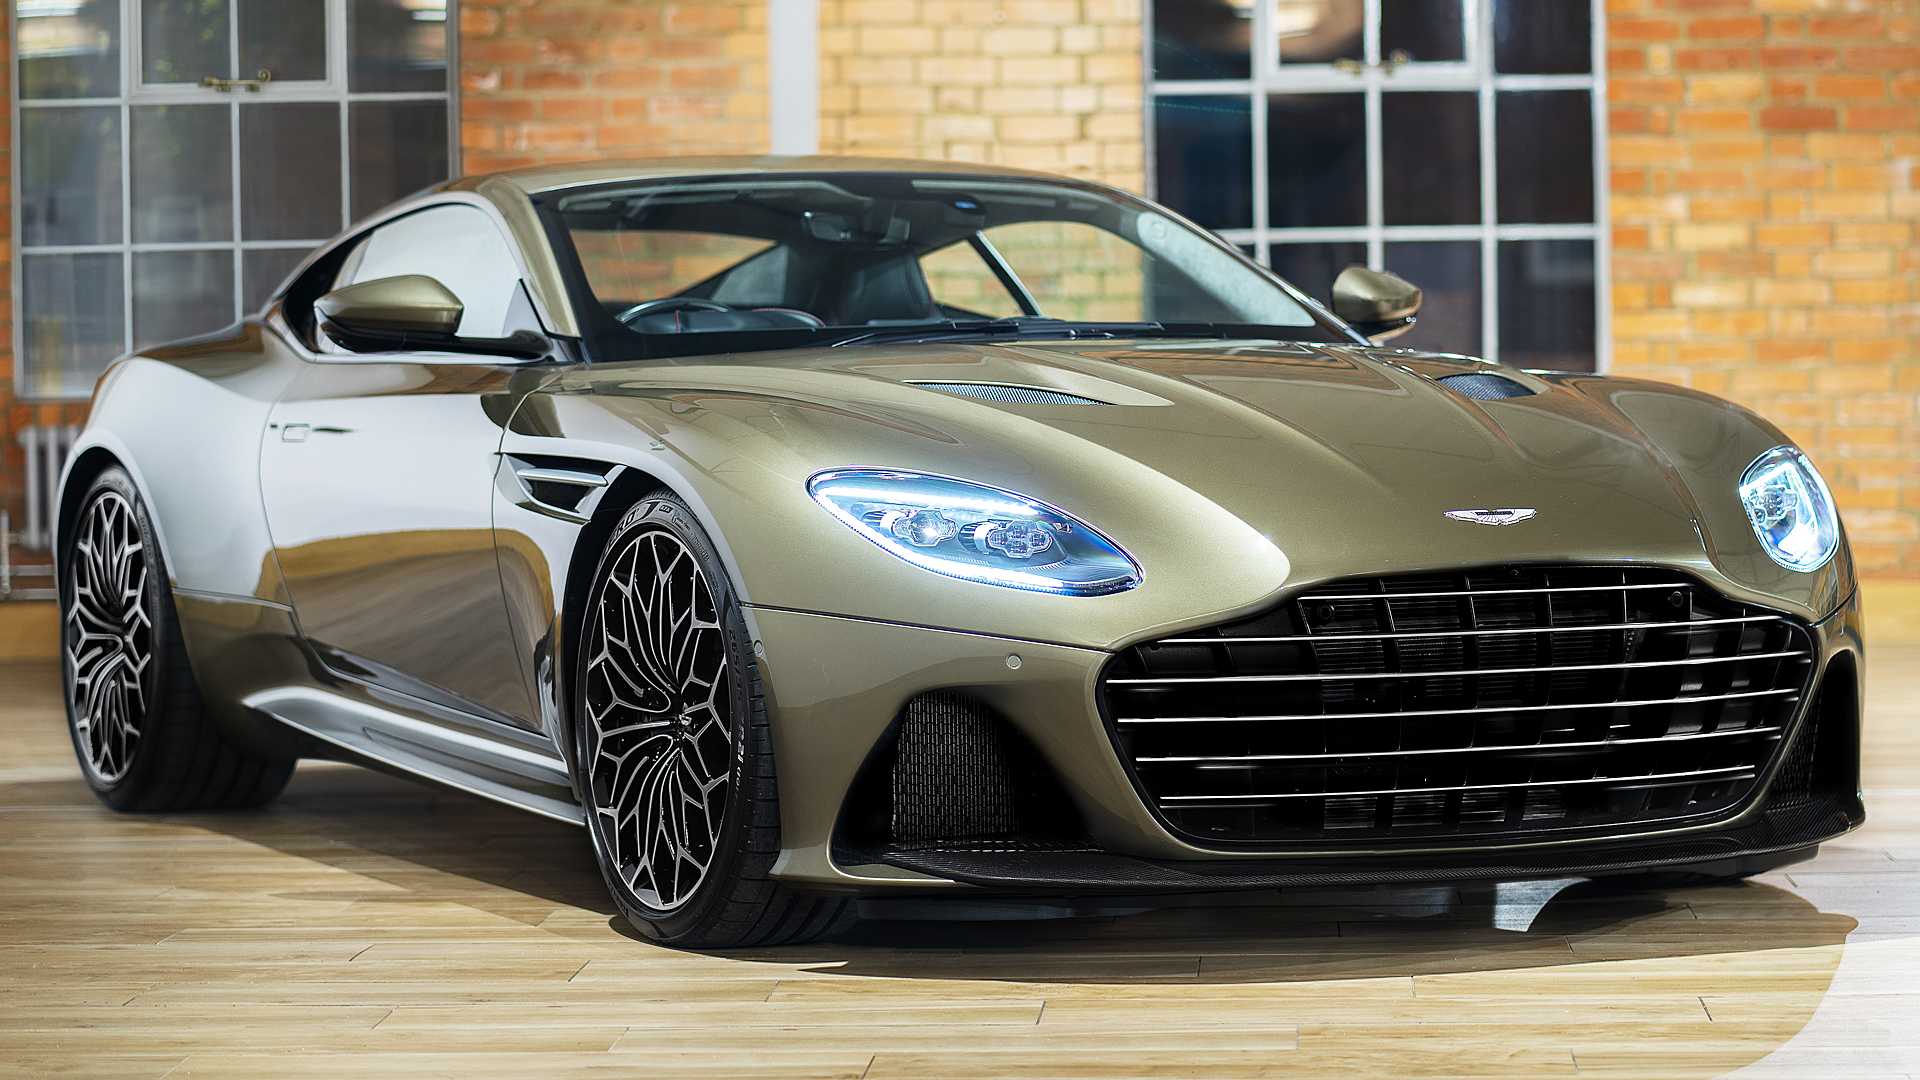 Aston Martin DBS Superleggera OHMSS Edition